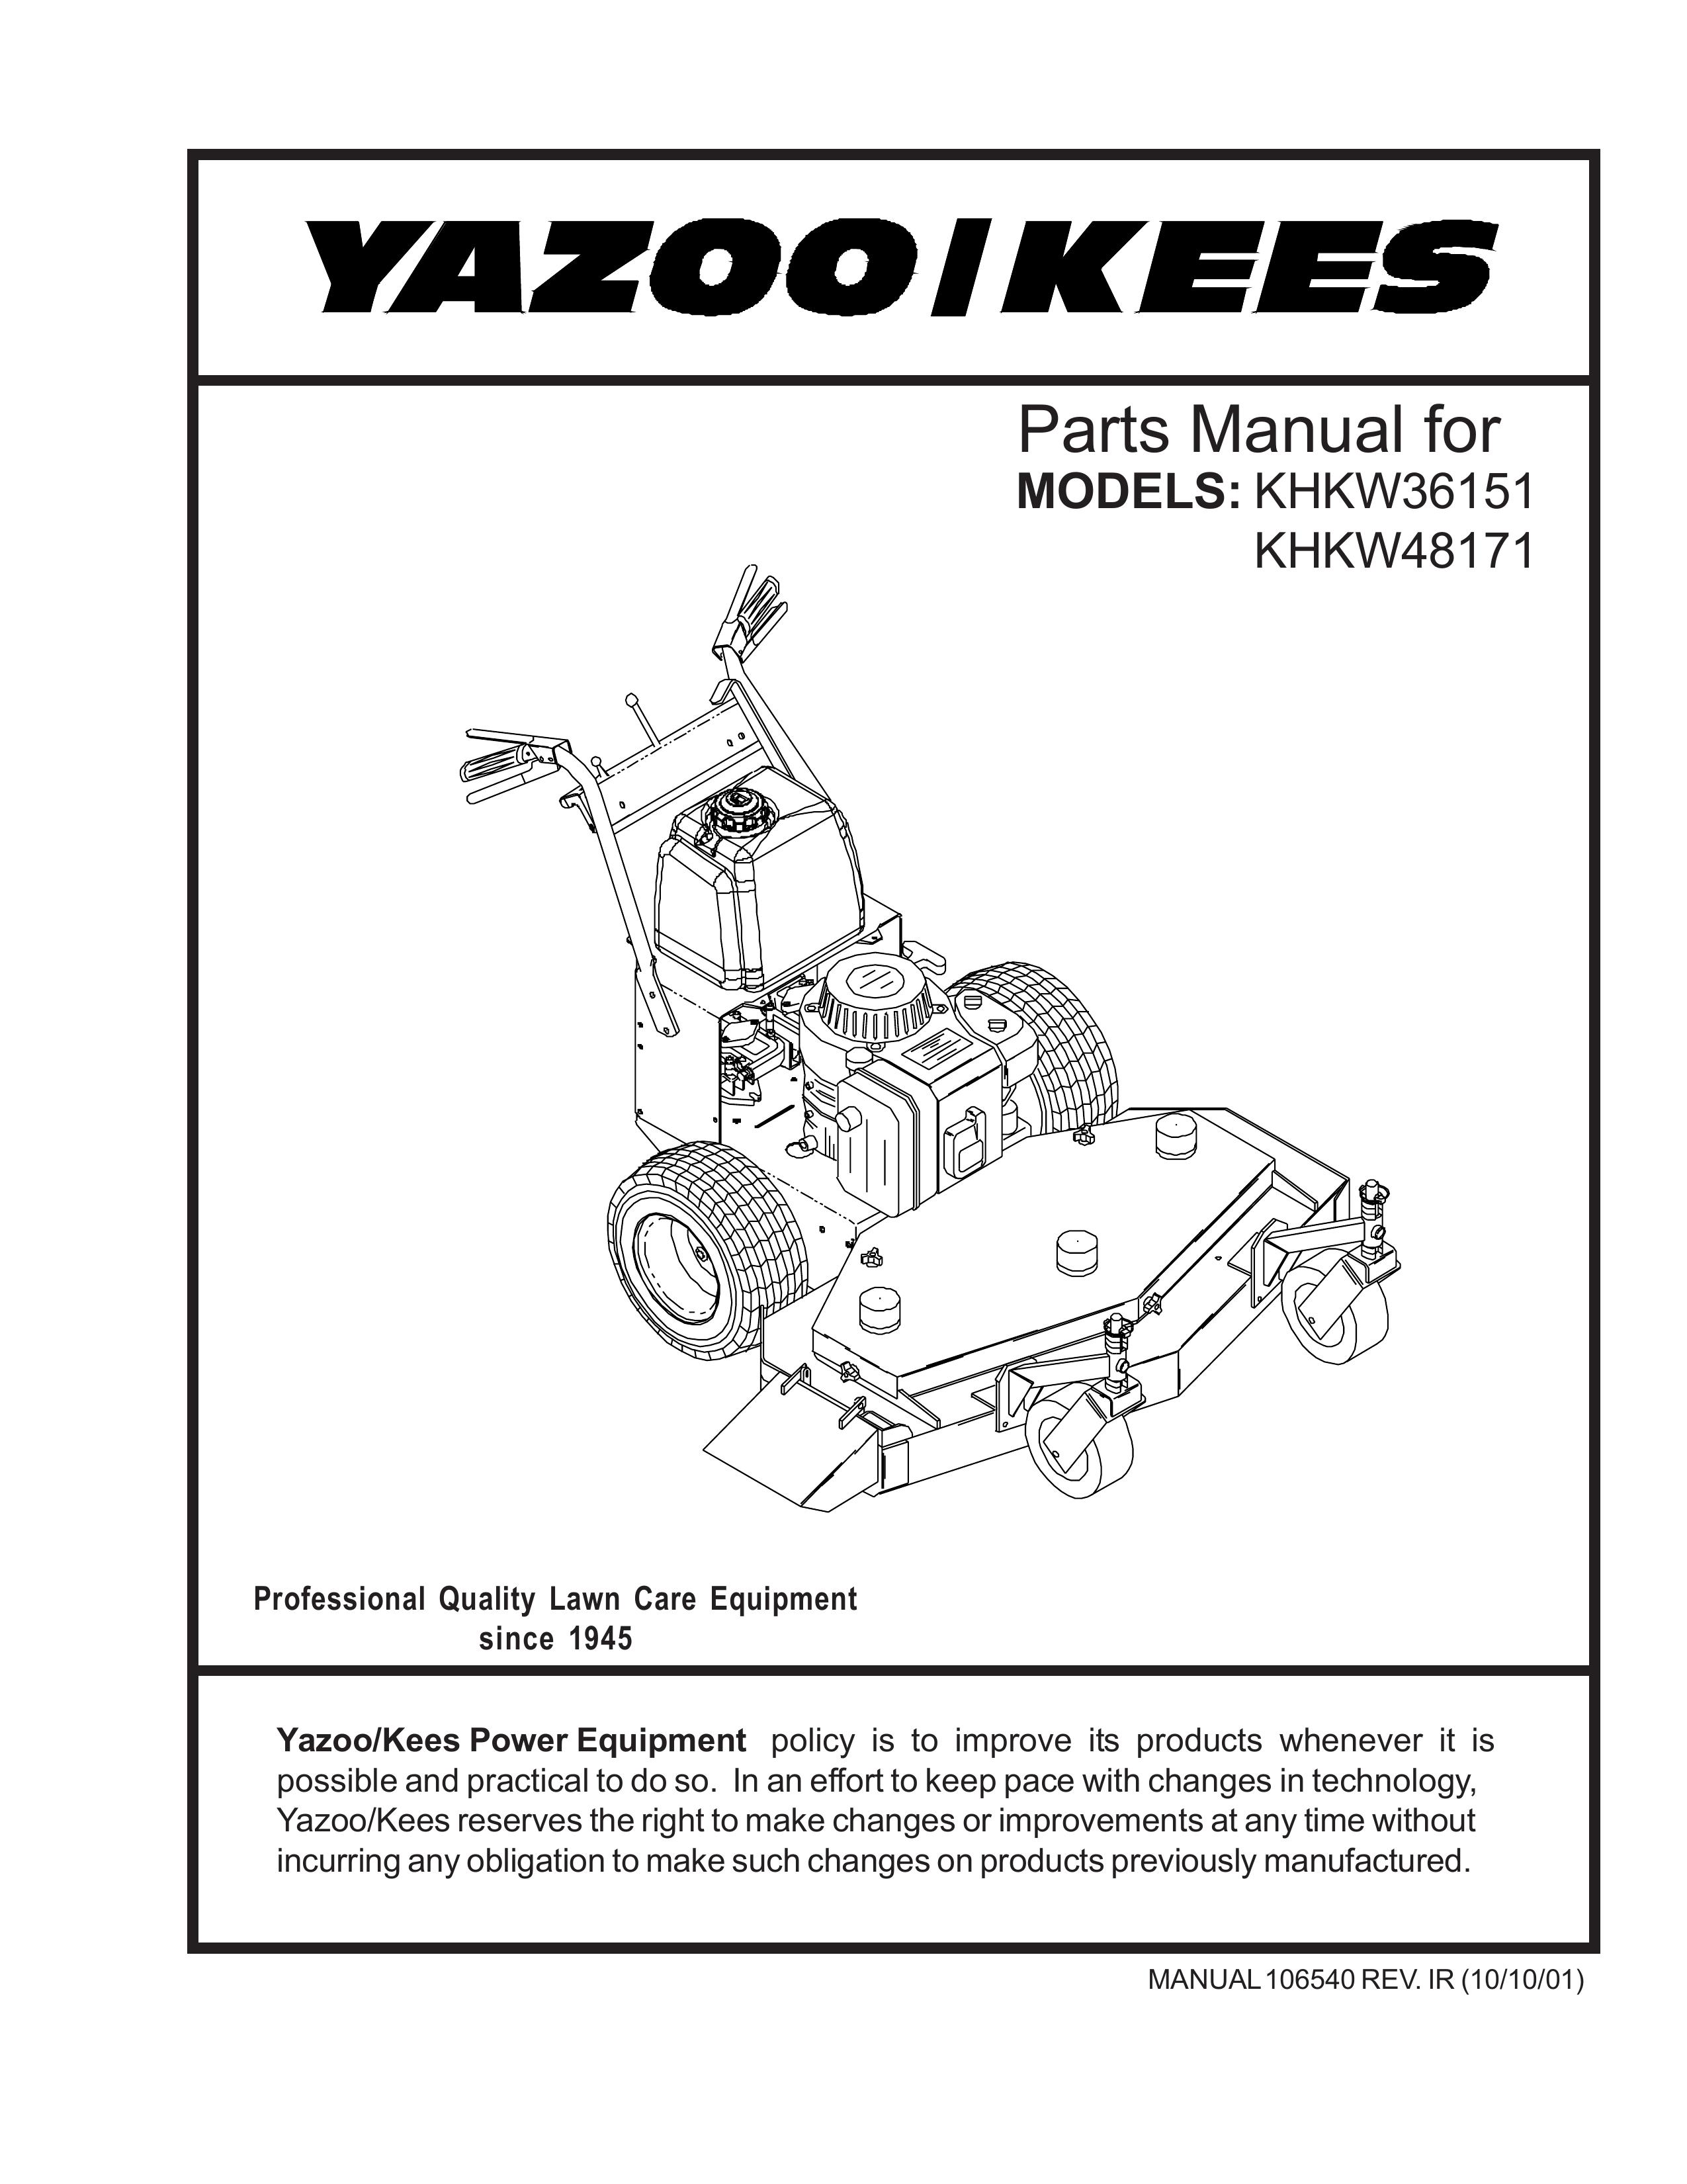 Yazoo/Kees KHKW36151 Lawn Mower User Manual